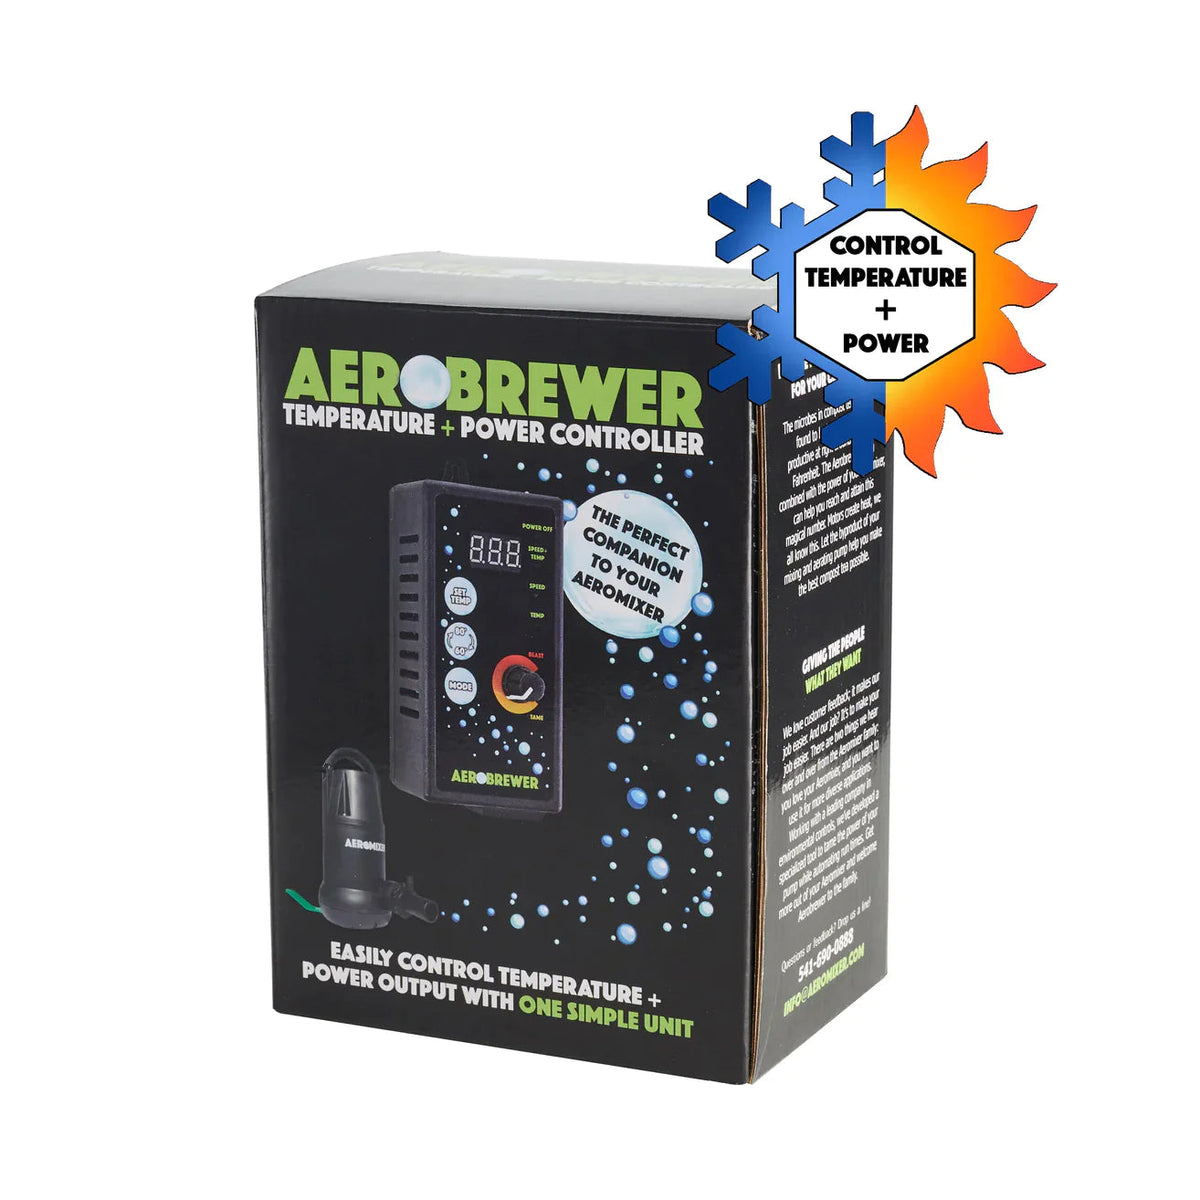 AeroMixer Aerobrewer: Temperature + Power Controller